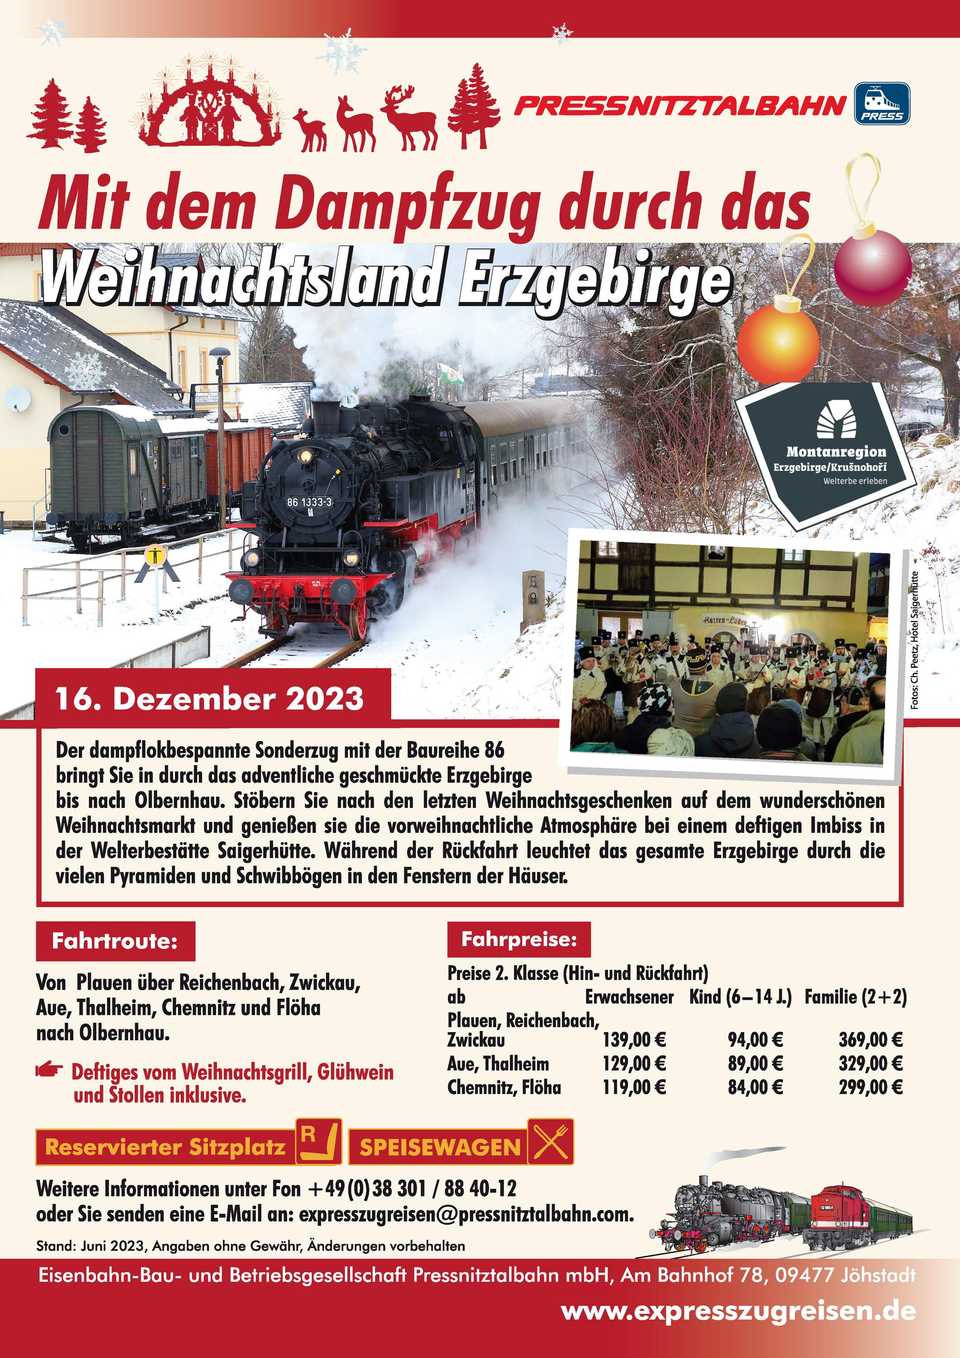 Veranstaltungsankündigung 16. Dezember 2023: Mit dem Dampfzug durch das Weihnachtsland Erzgebirge